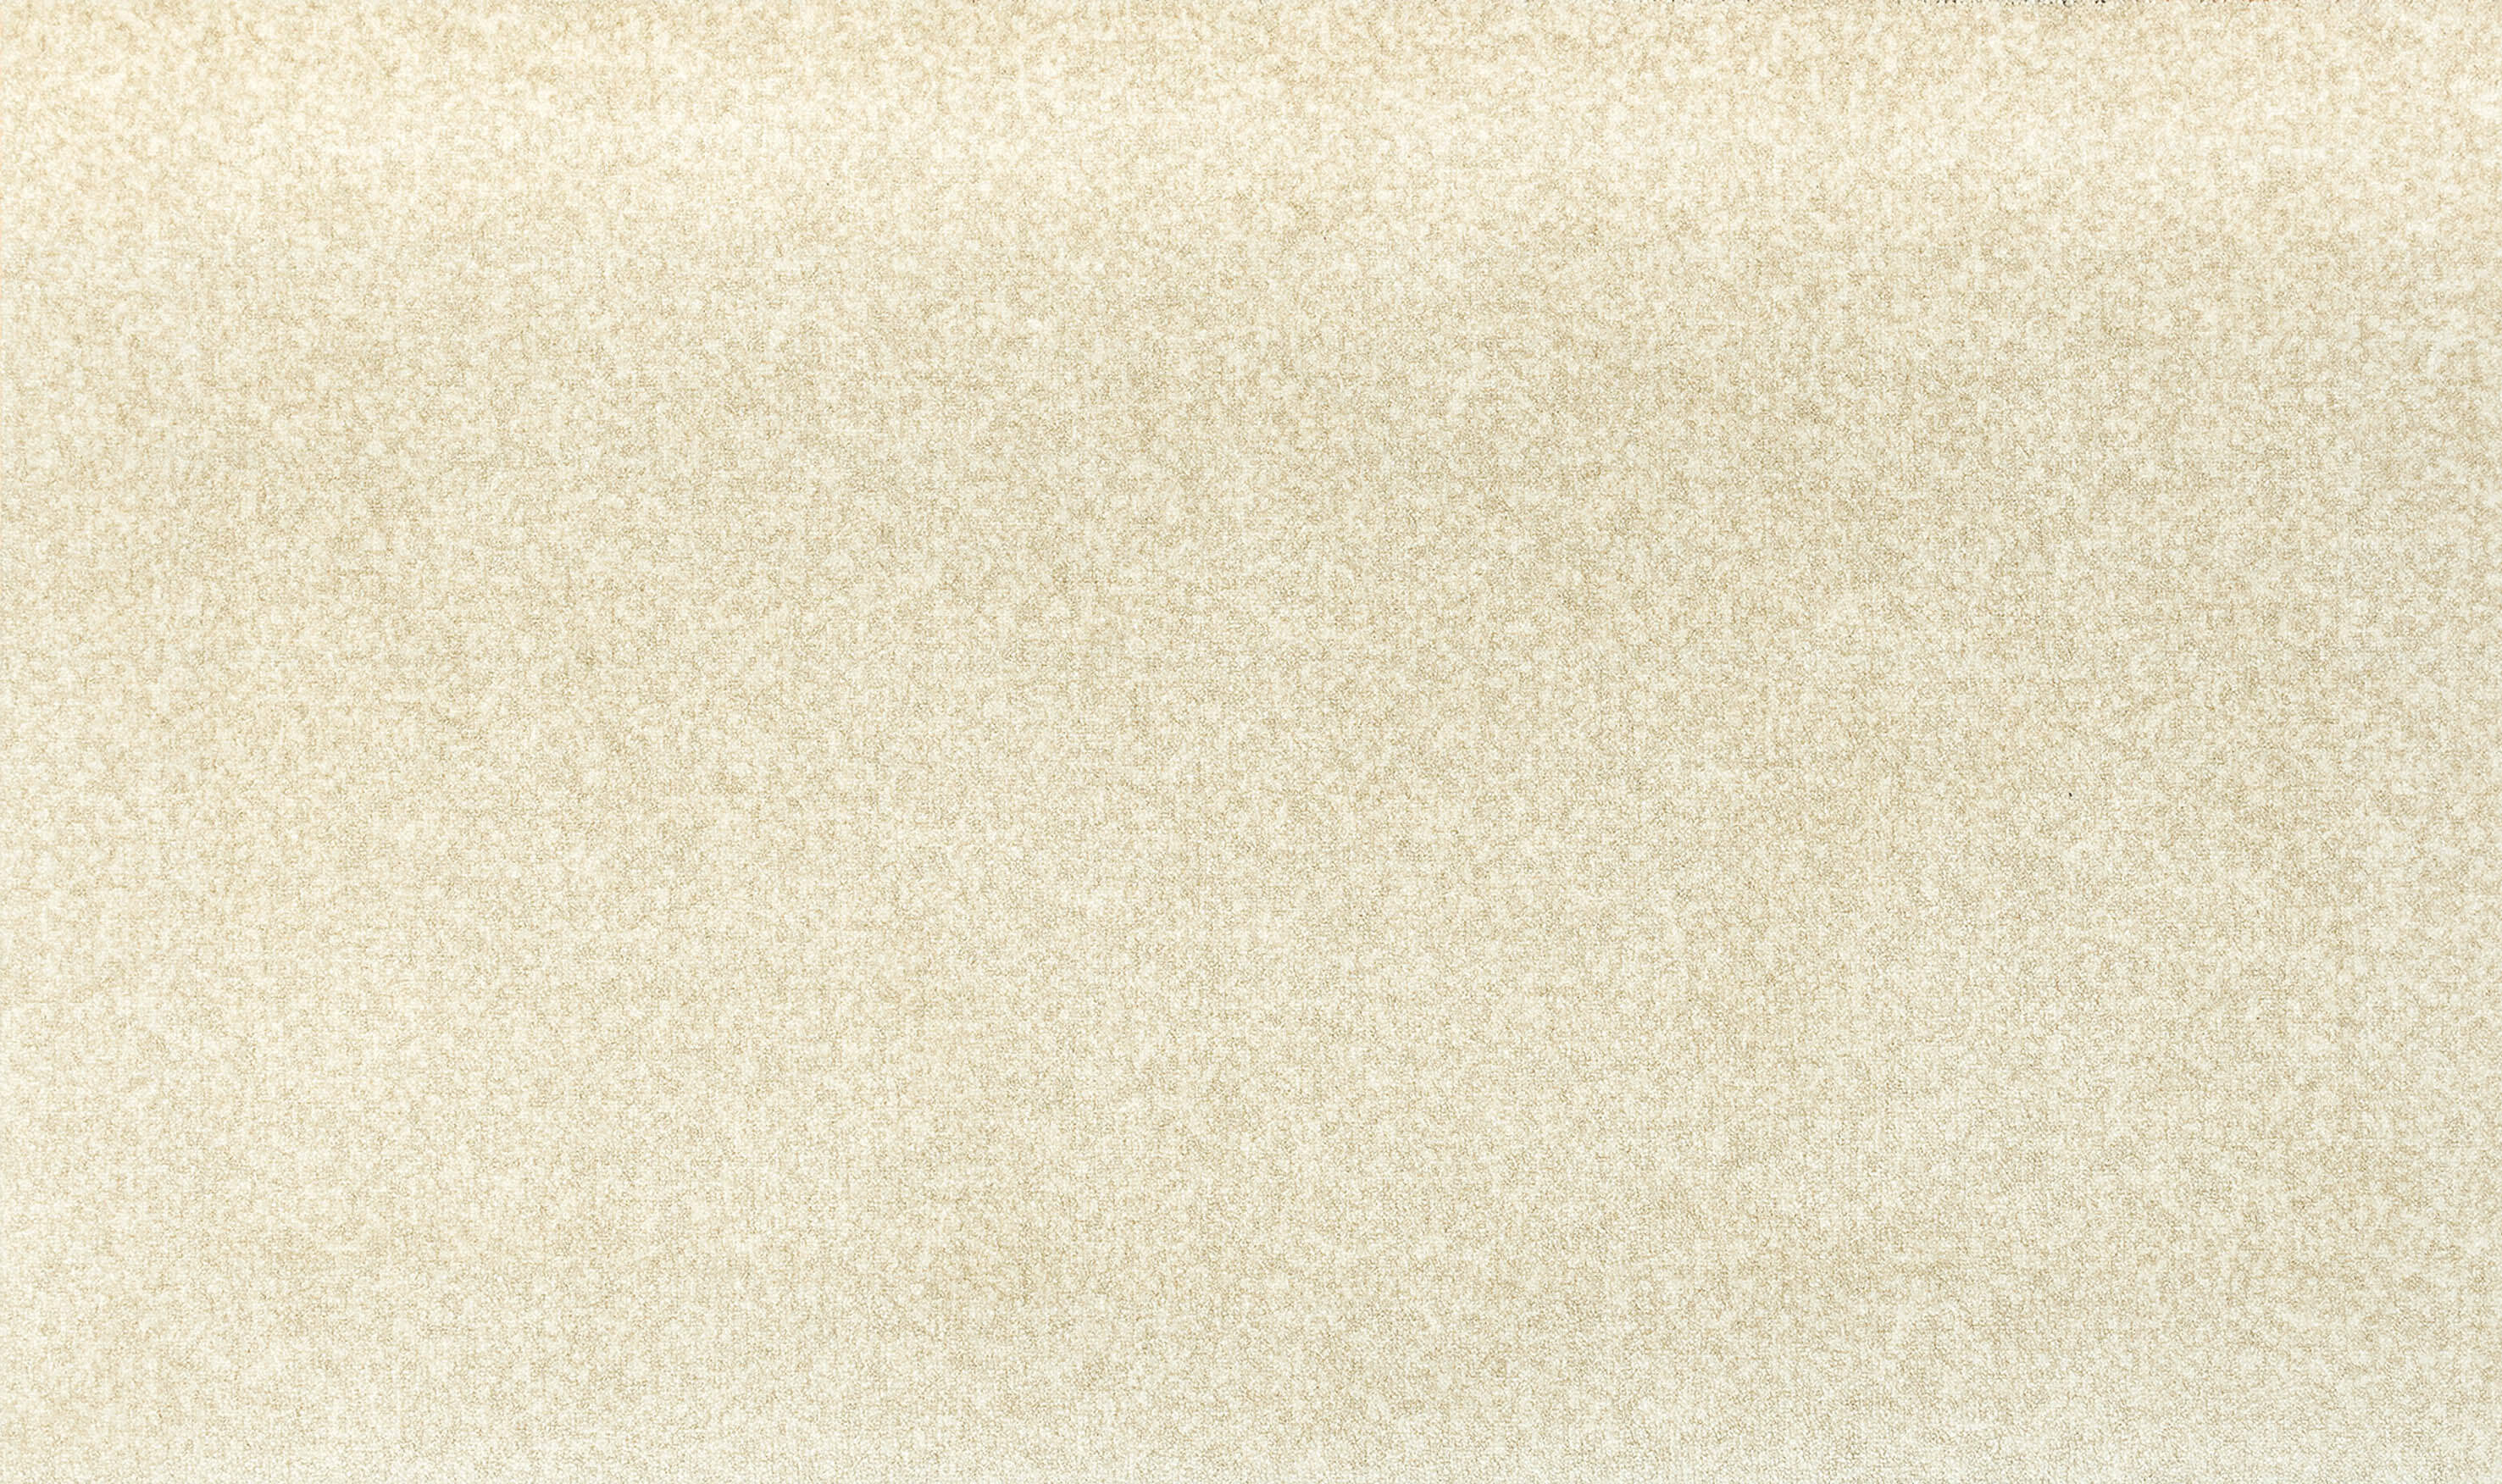 Randlose Fußmatte Marble Beige, unifarben, 040 x 060, 050 x 070, 070 x 120 cm, Draufsicht